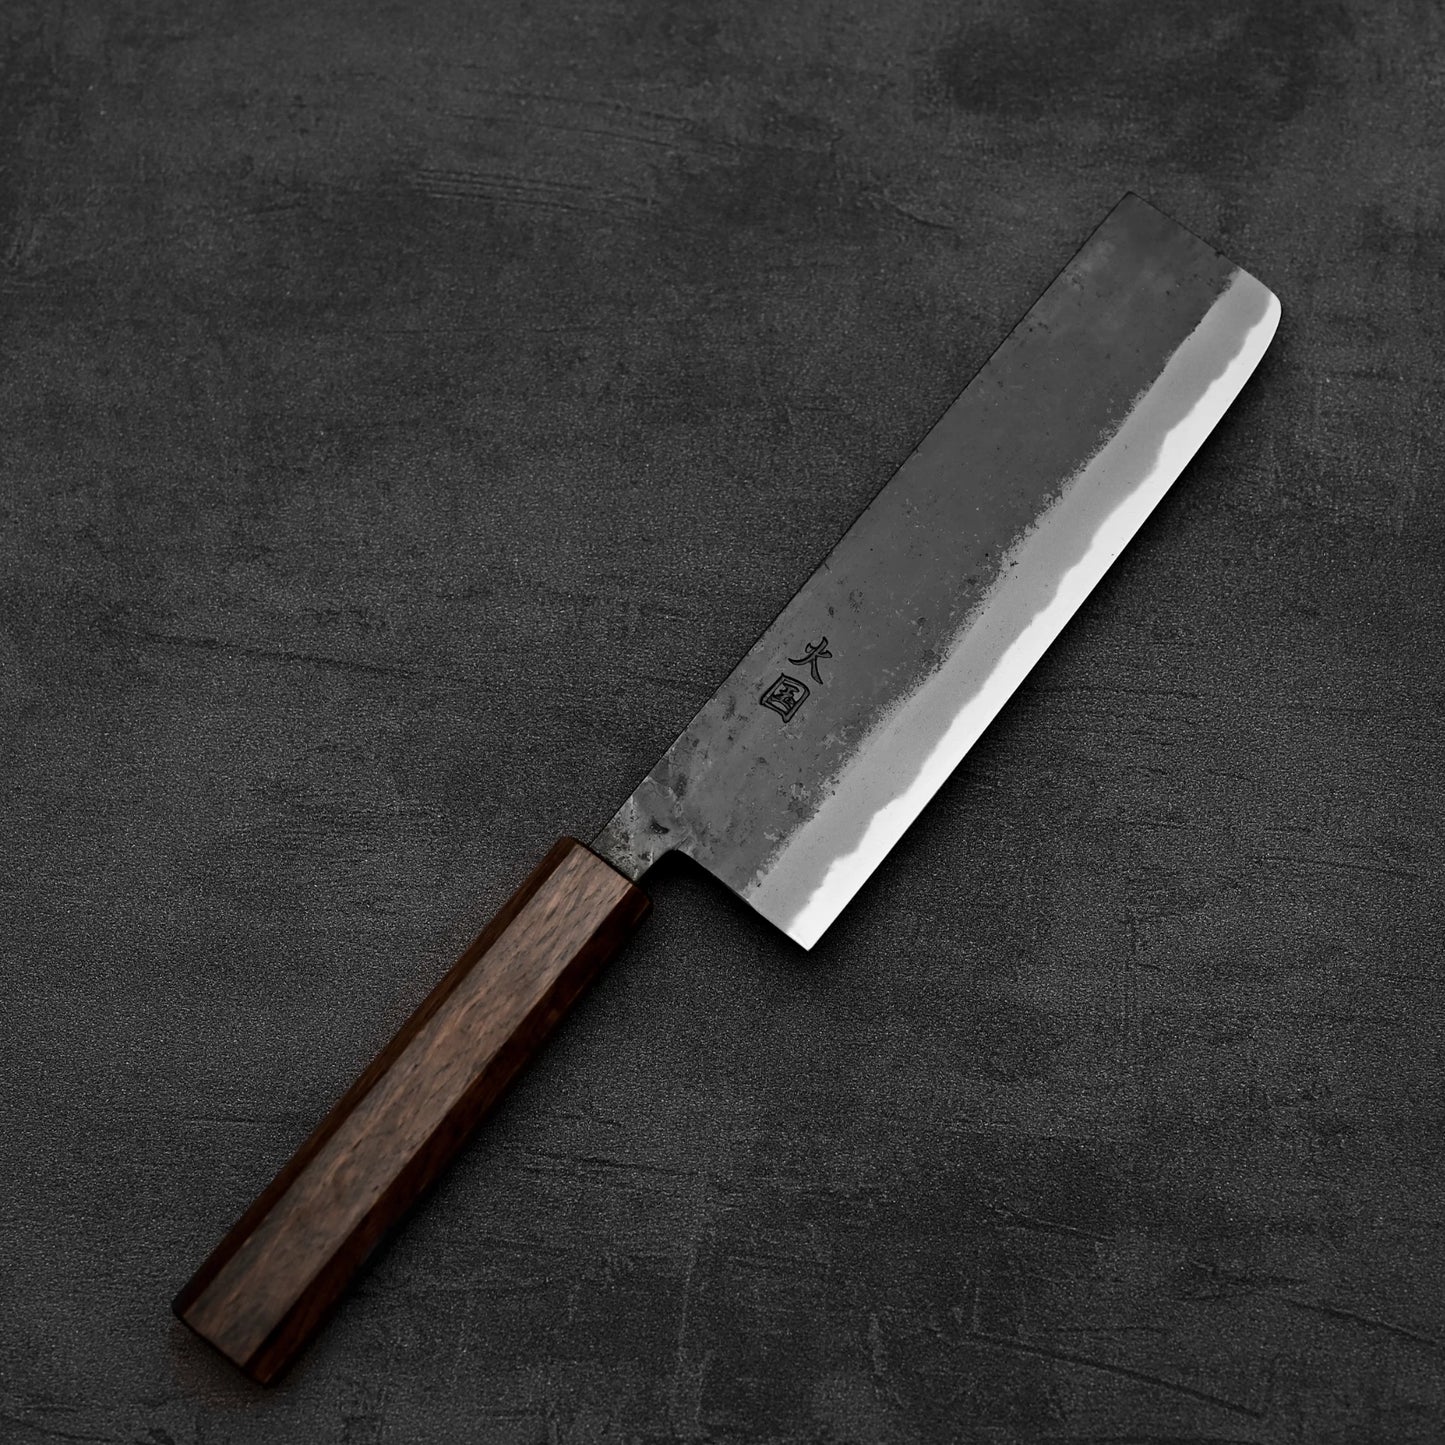 Top down view of Hinokuni kurouchi shirogami#1 nakiri knife